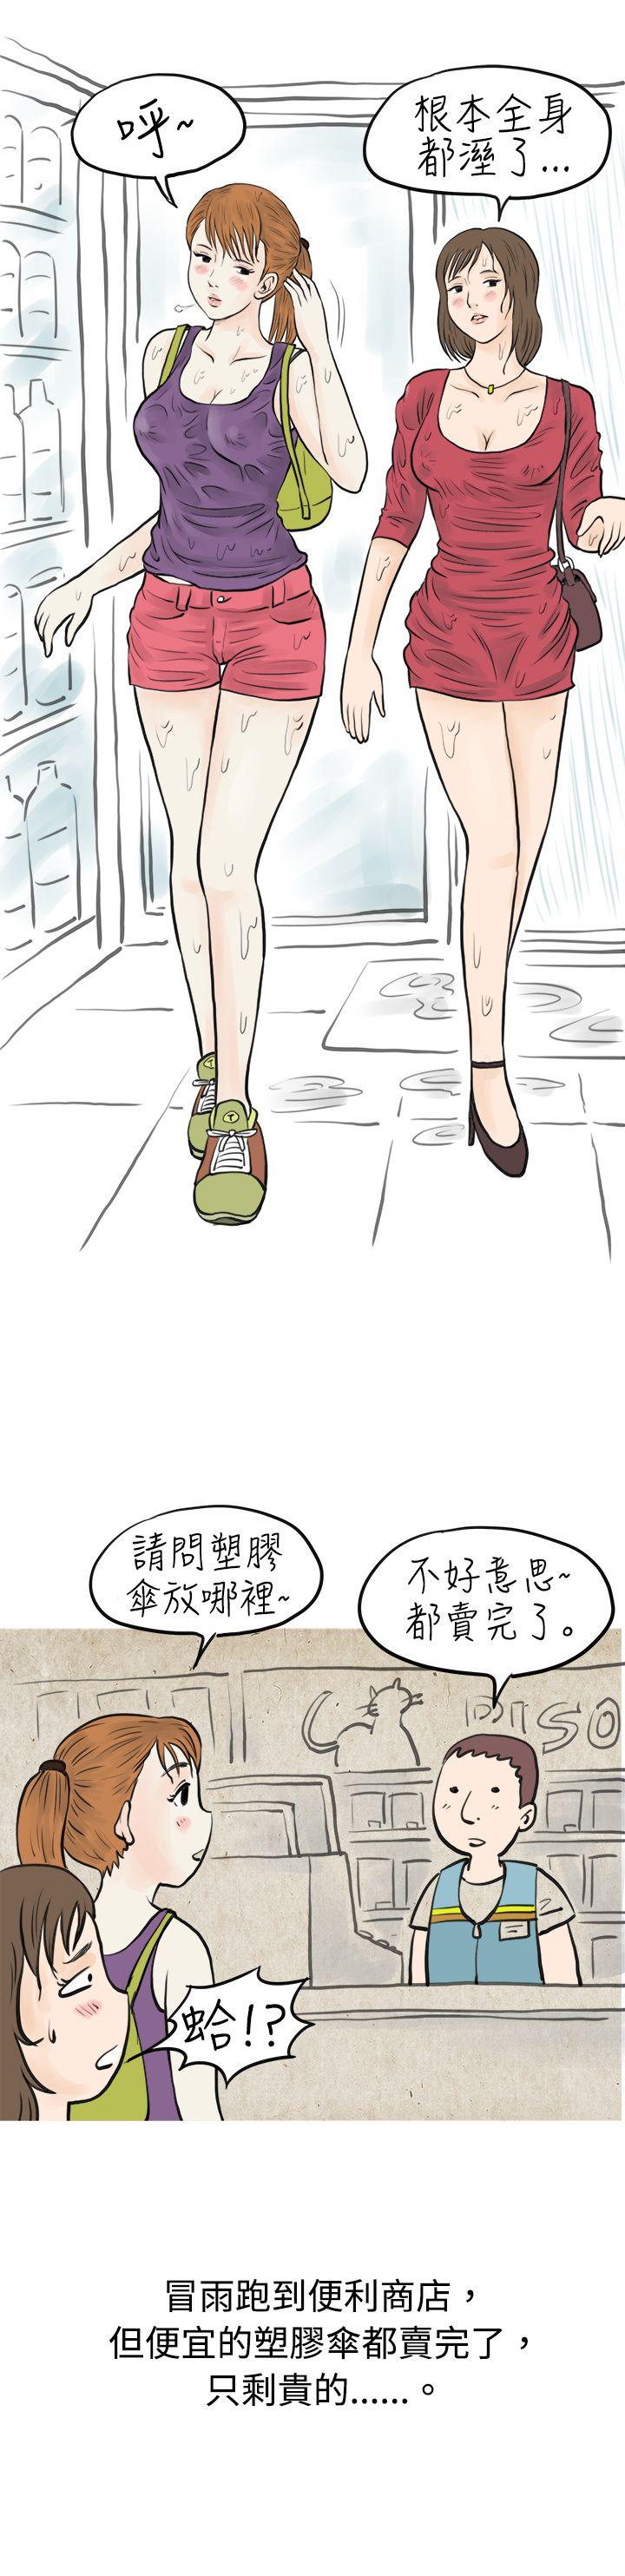 秘密Story  在弘大夜店的豔遇故事(上) 漫画图片7.jpg